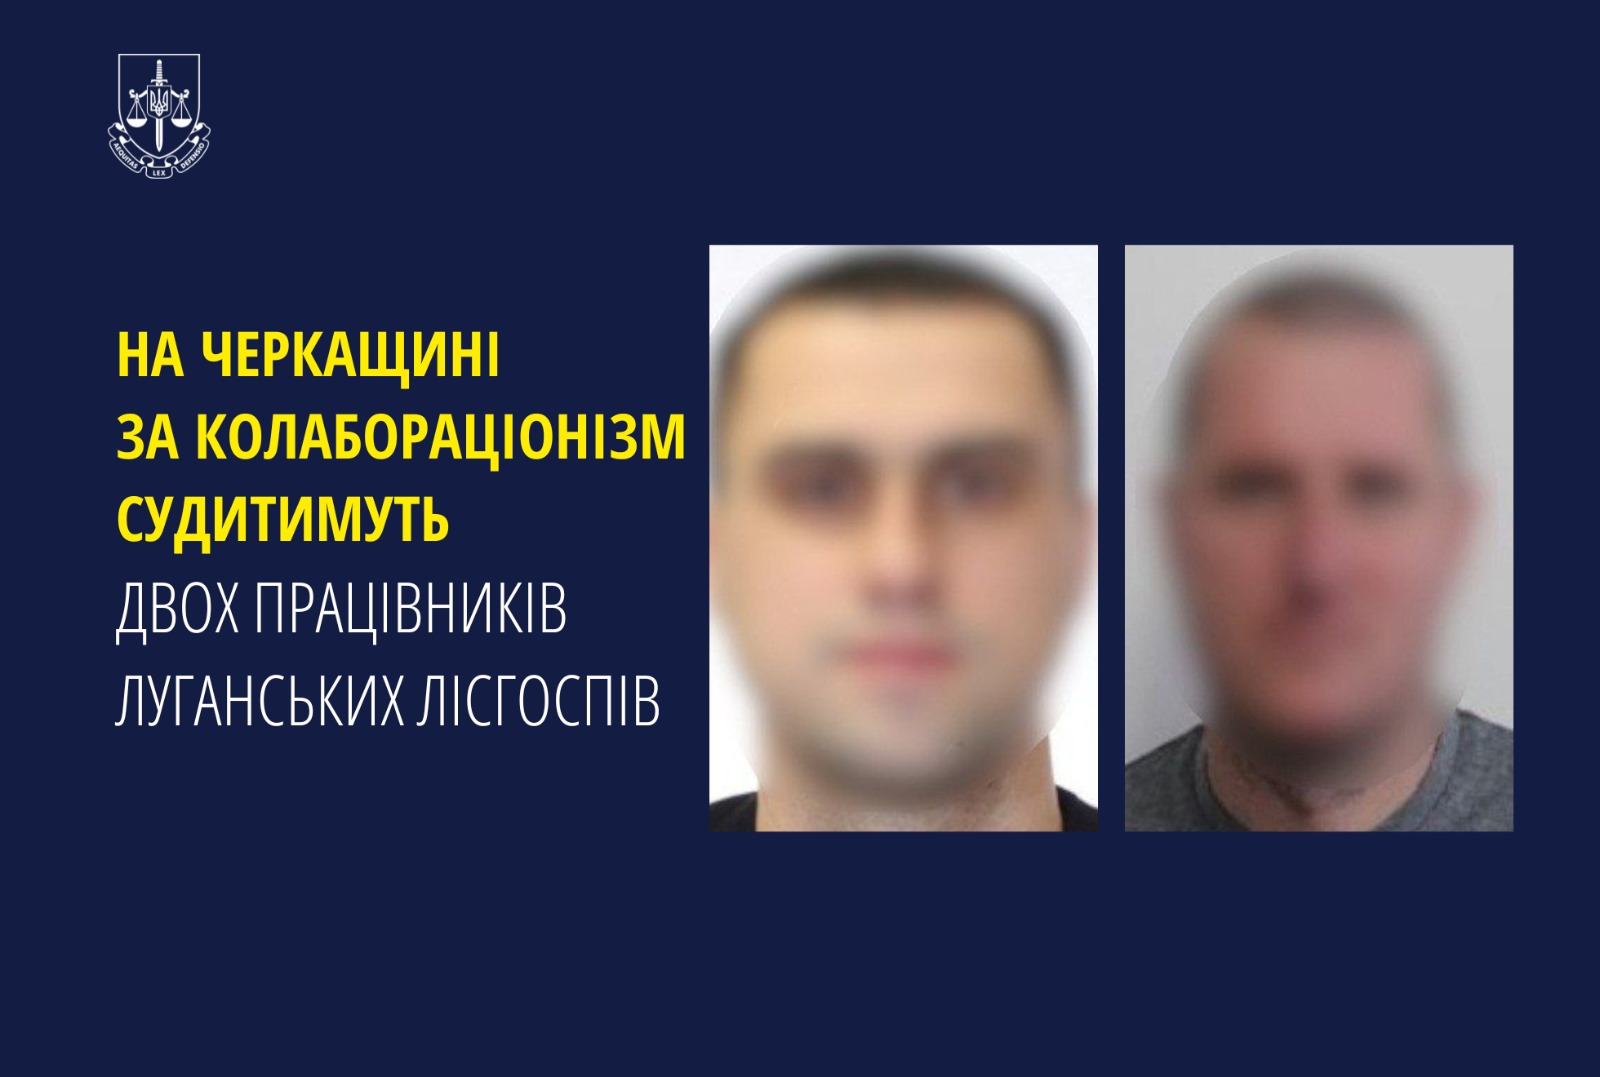 На Черкащині за колабораціонізм судитимуть двох працівників луганських лісгоспів